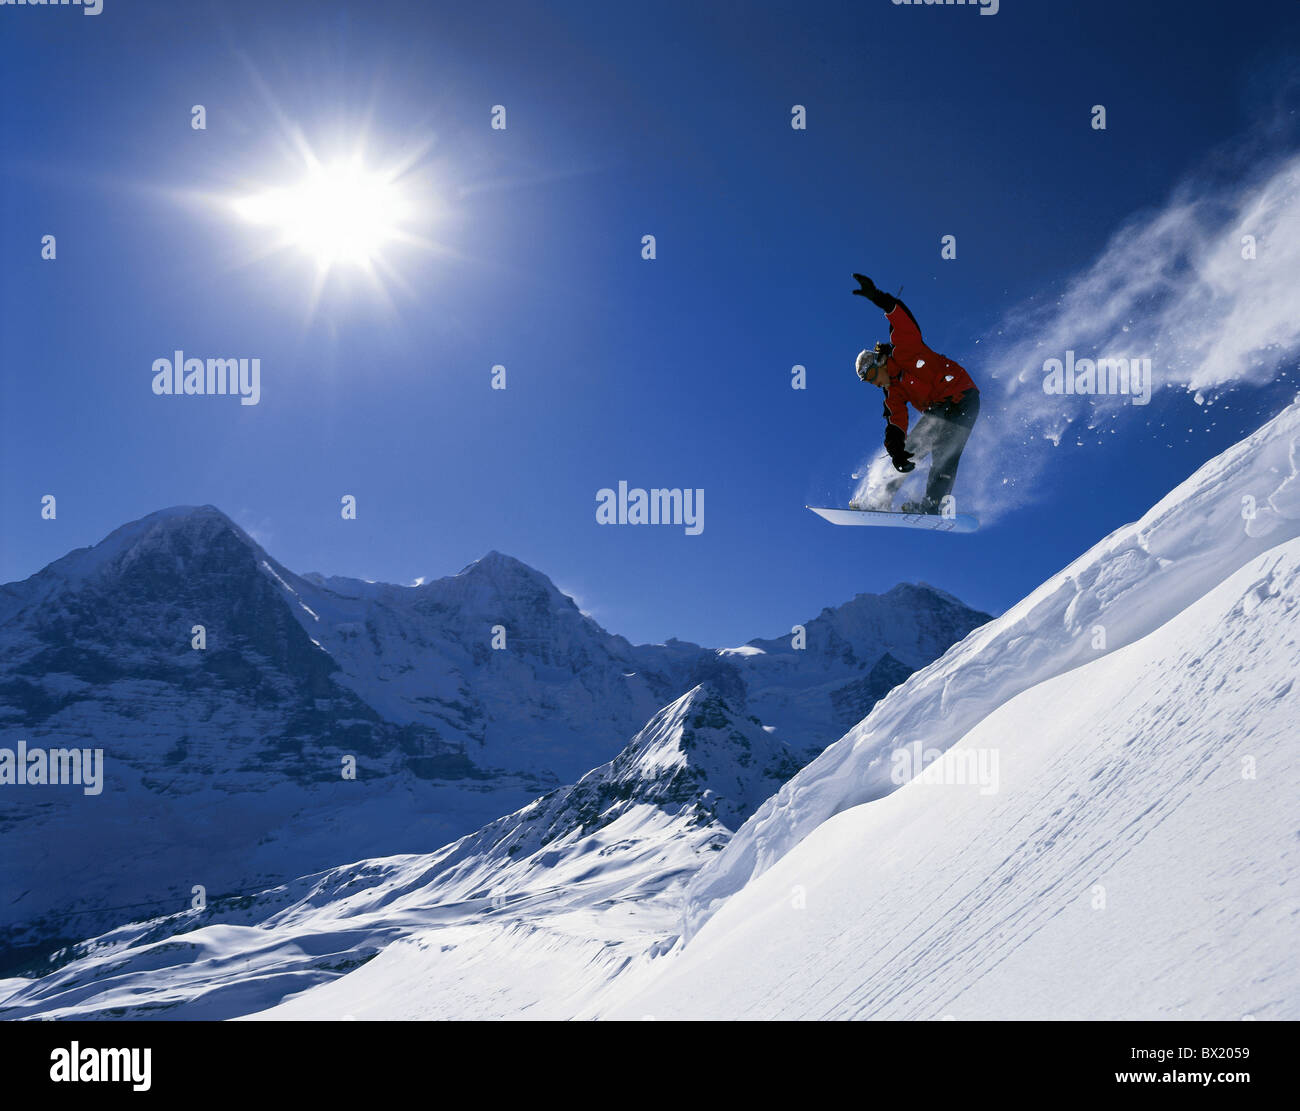 Winter sports snowboard jump snow winter sports action Eiger Monch Jungfrau Snowboarder Mannlichen mountai Stock Photo